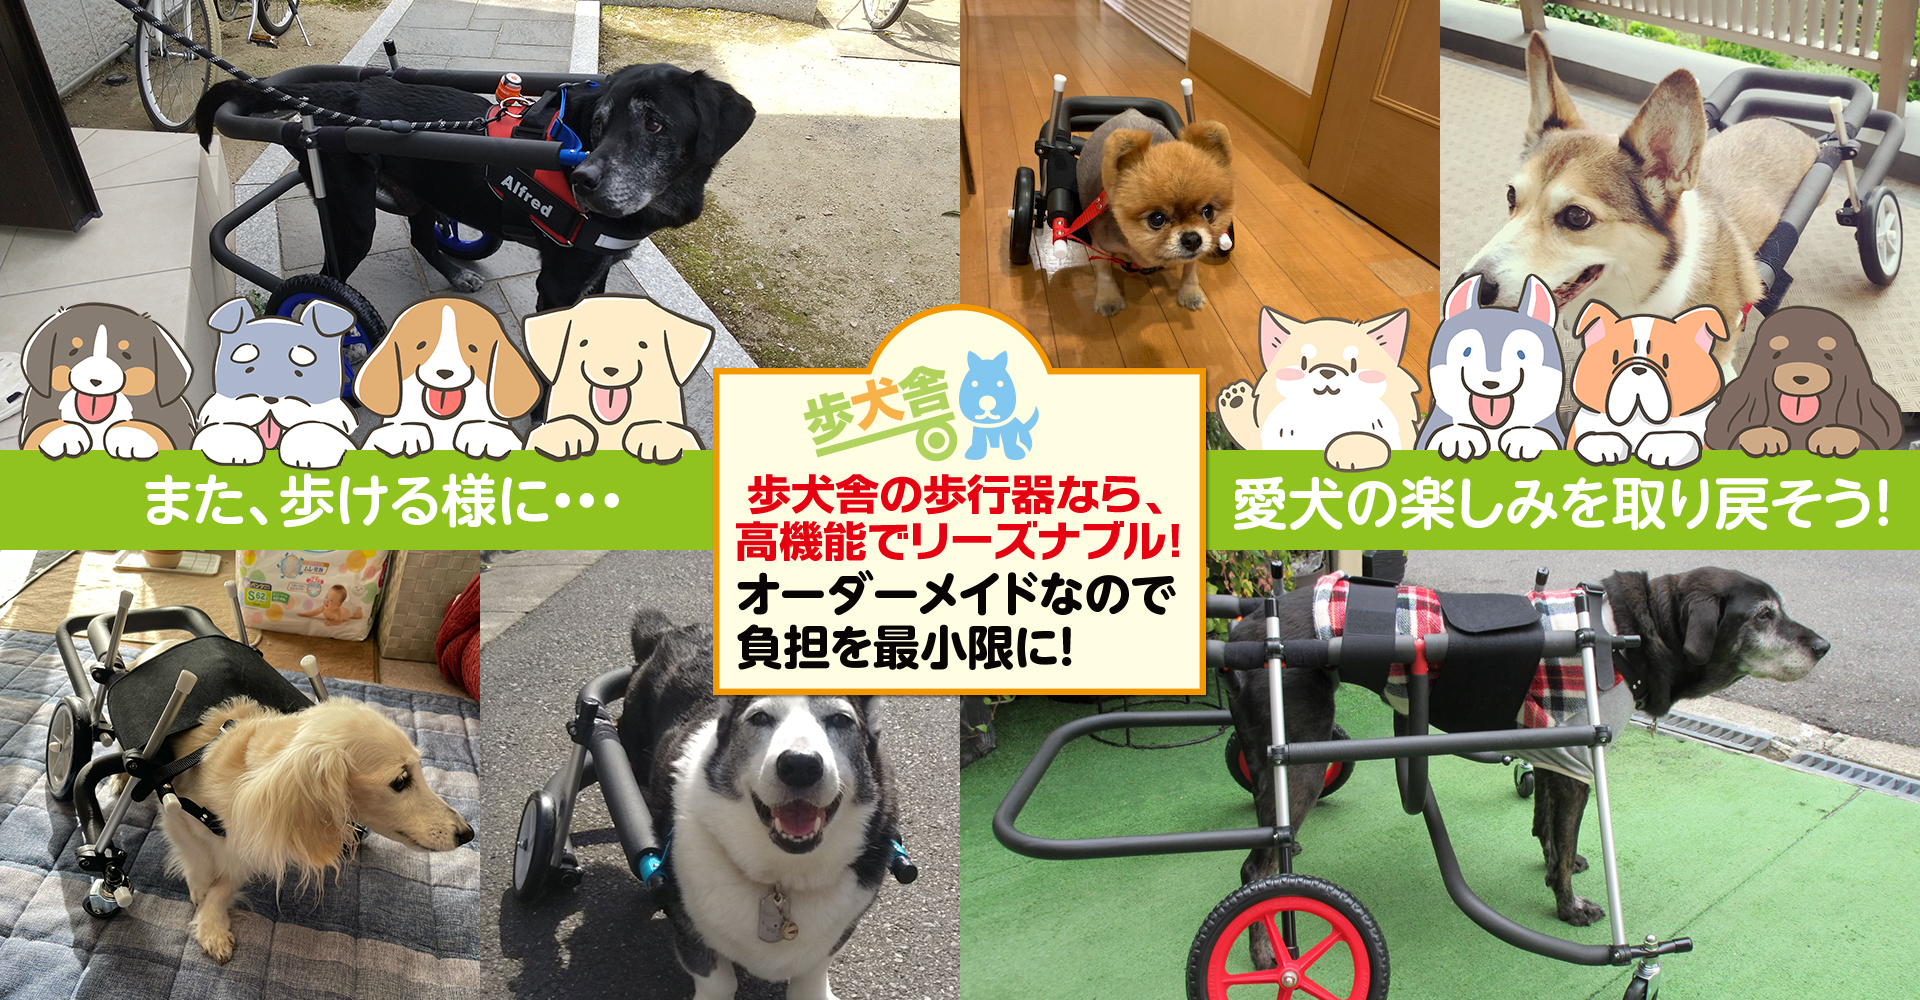 パピヨン4輪歩行器！リハビリ!食事補助!犬の歩行器！介護用!犬用車椅子!